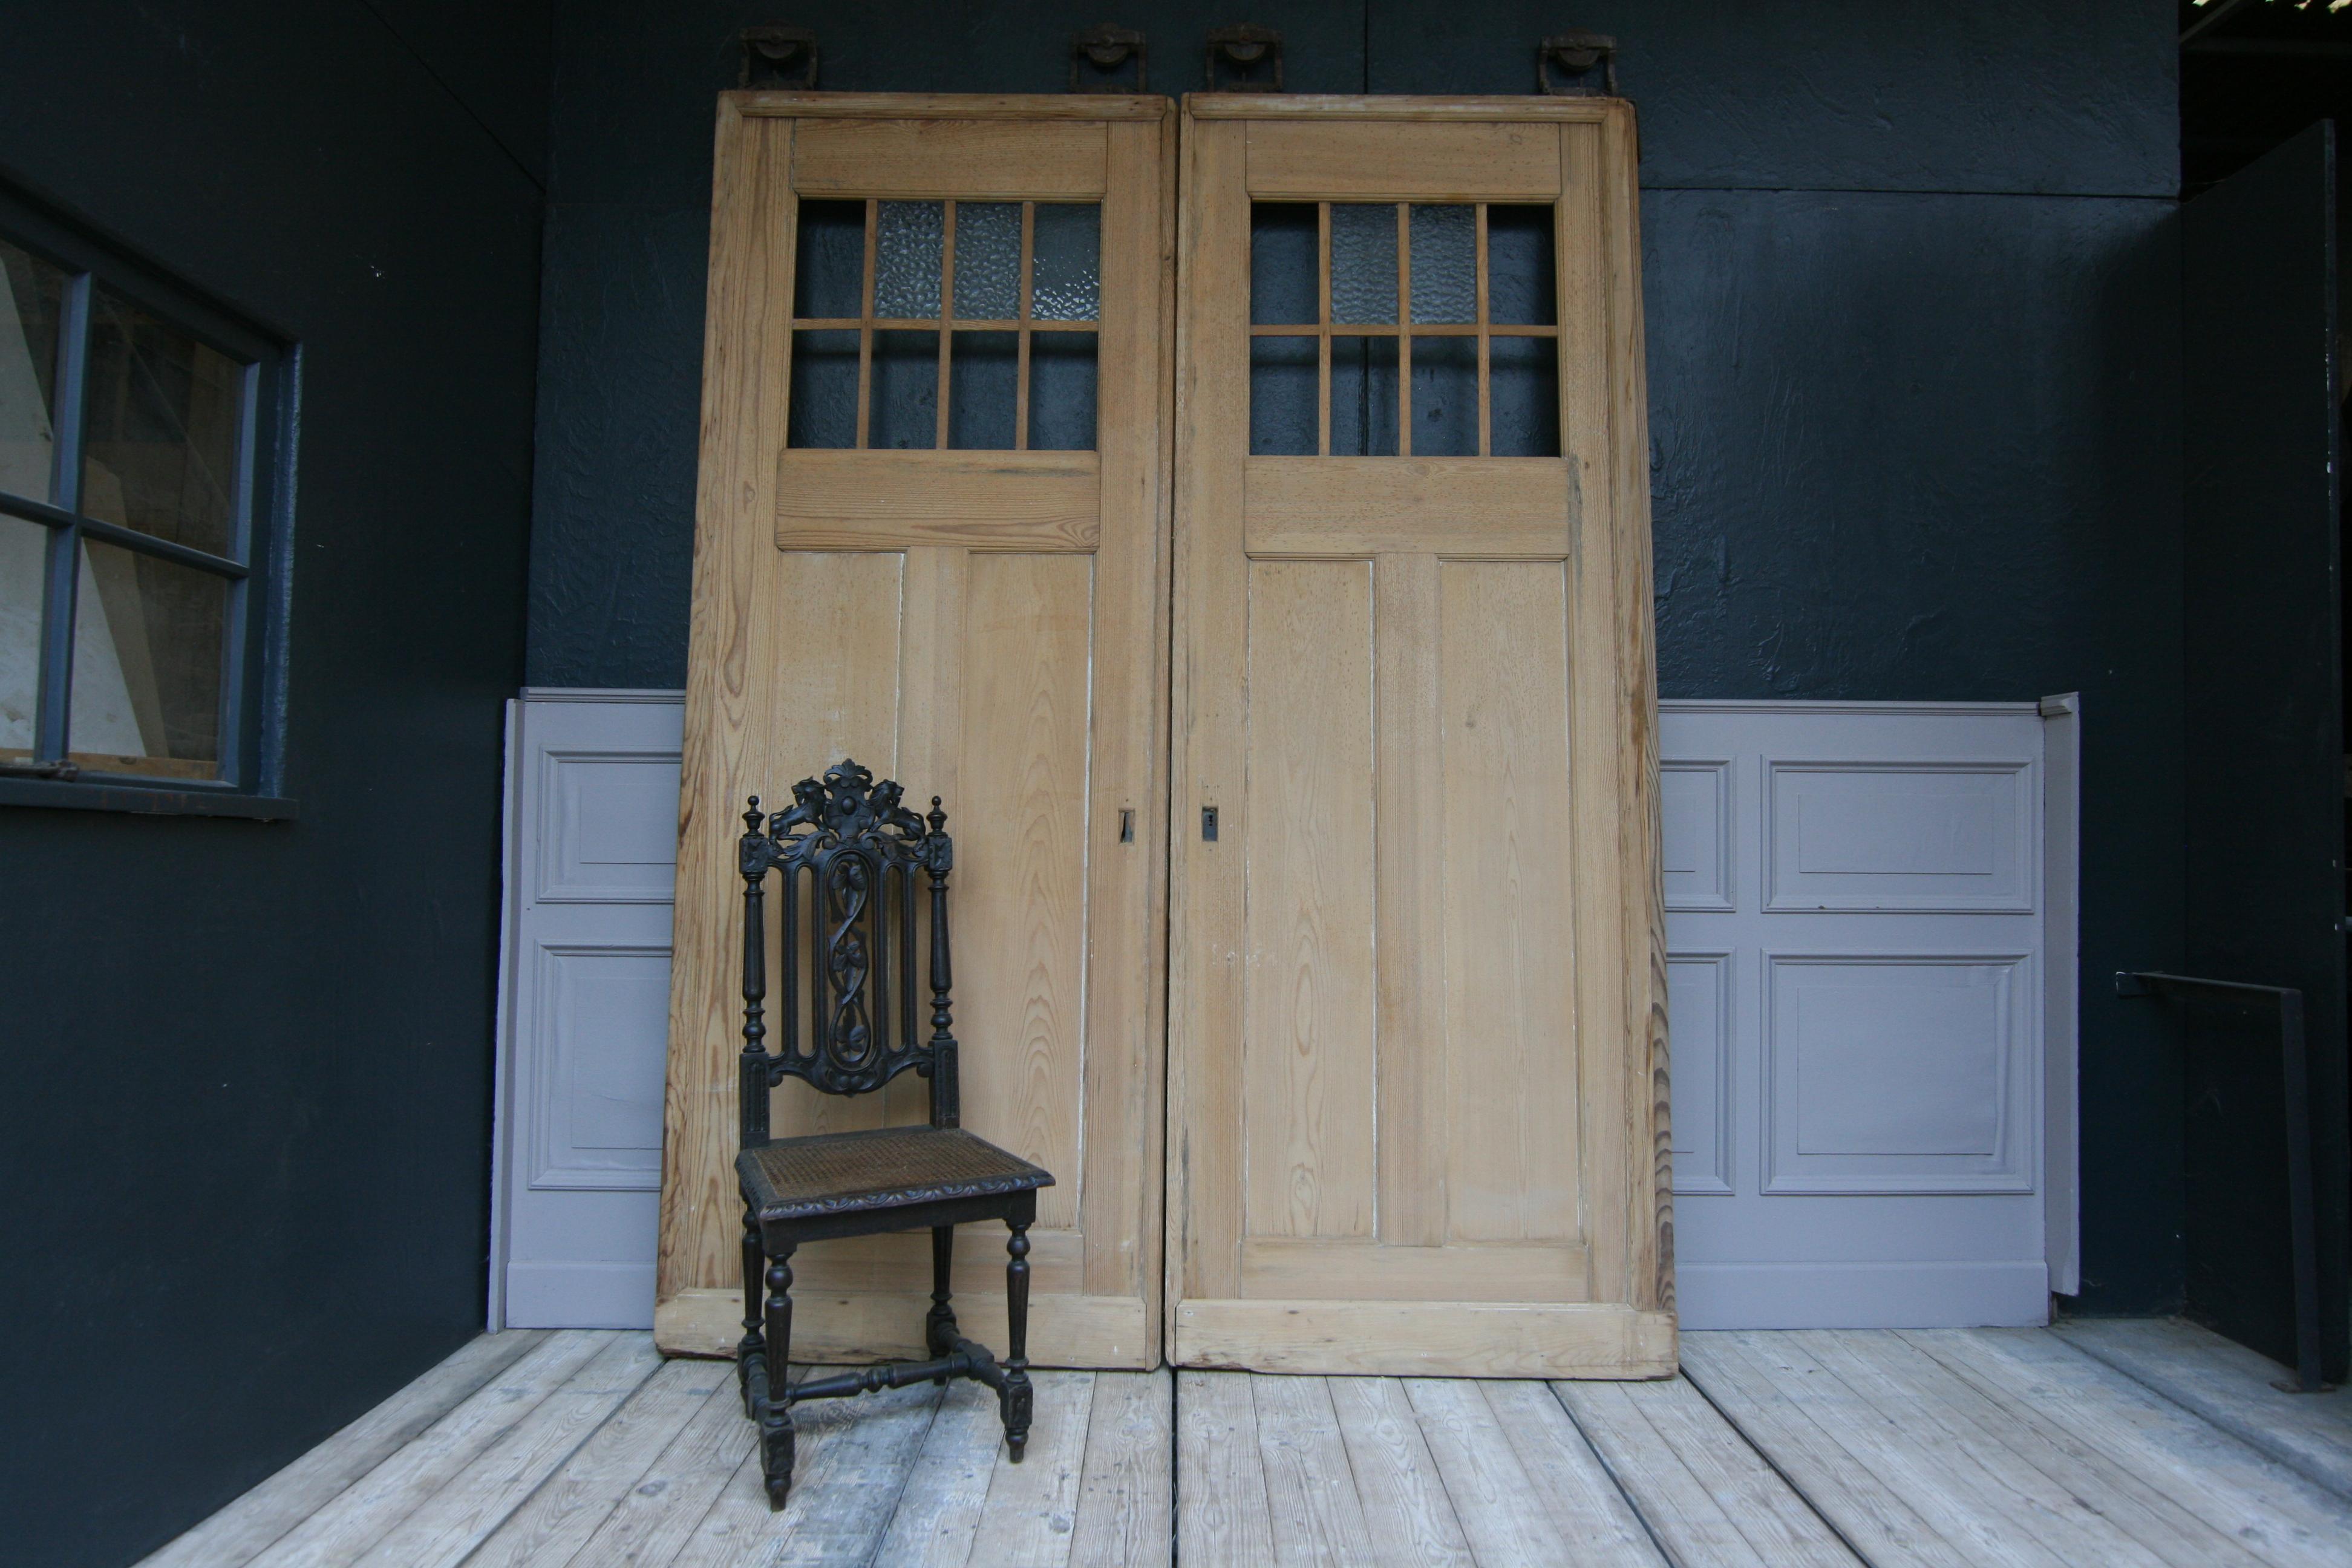 Ein Paar große deutsche Türen aus dem frühen 20. Jahrhundert aus Kiefernholz.
An jeder Tür sind die originalen Bügel oder Rollen montiert, mit denen sie ursprünglich als Schiebetüren verwendet werden konnten.
Das Kiefernholz ist ausgelaugt, so